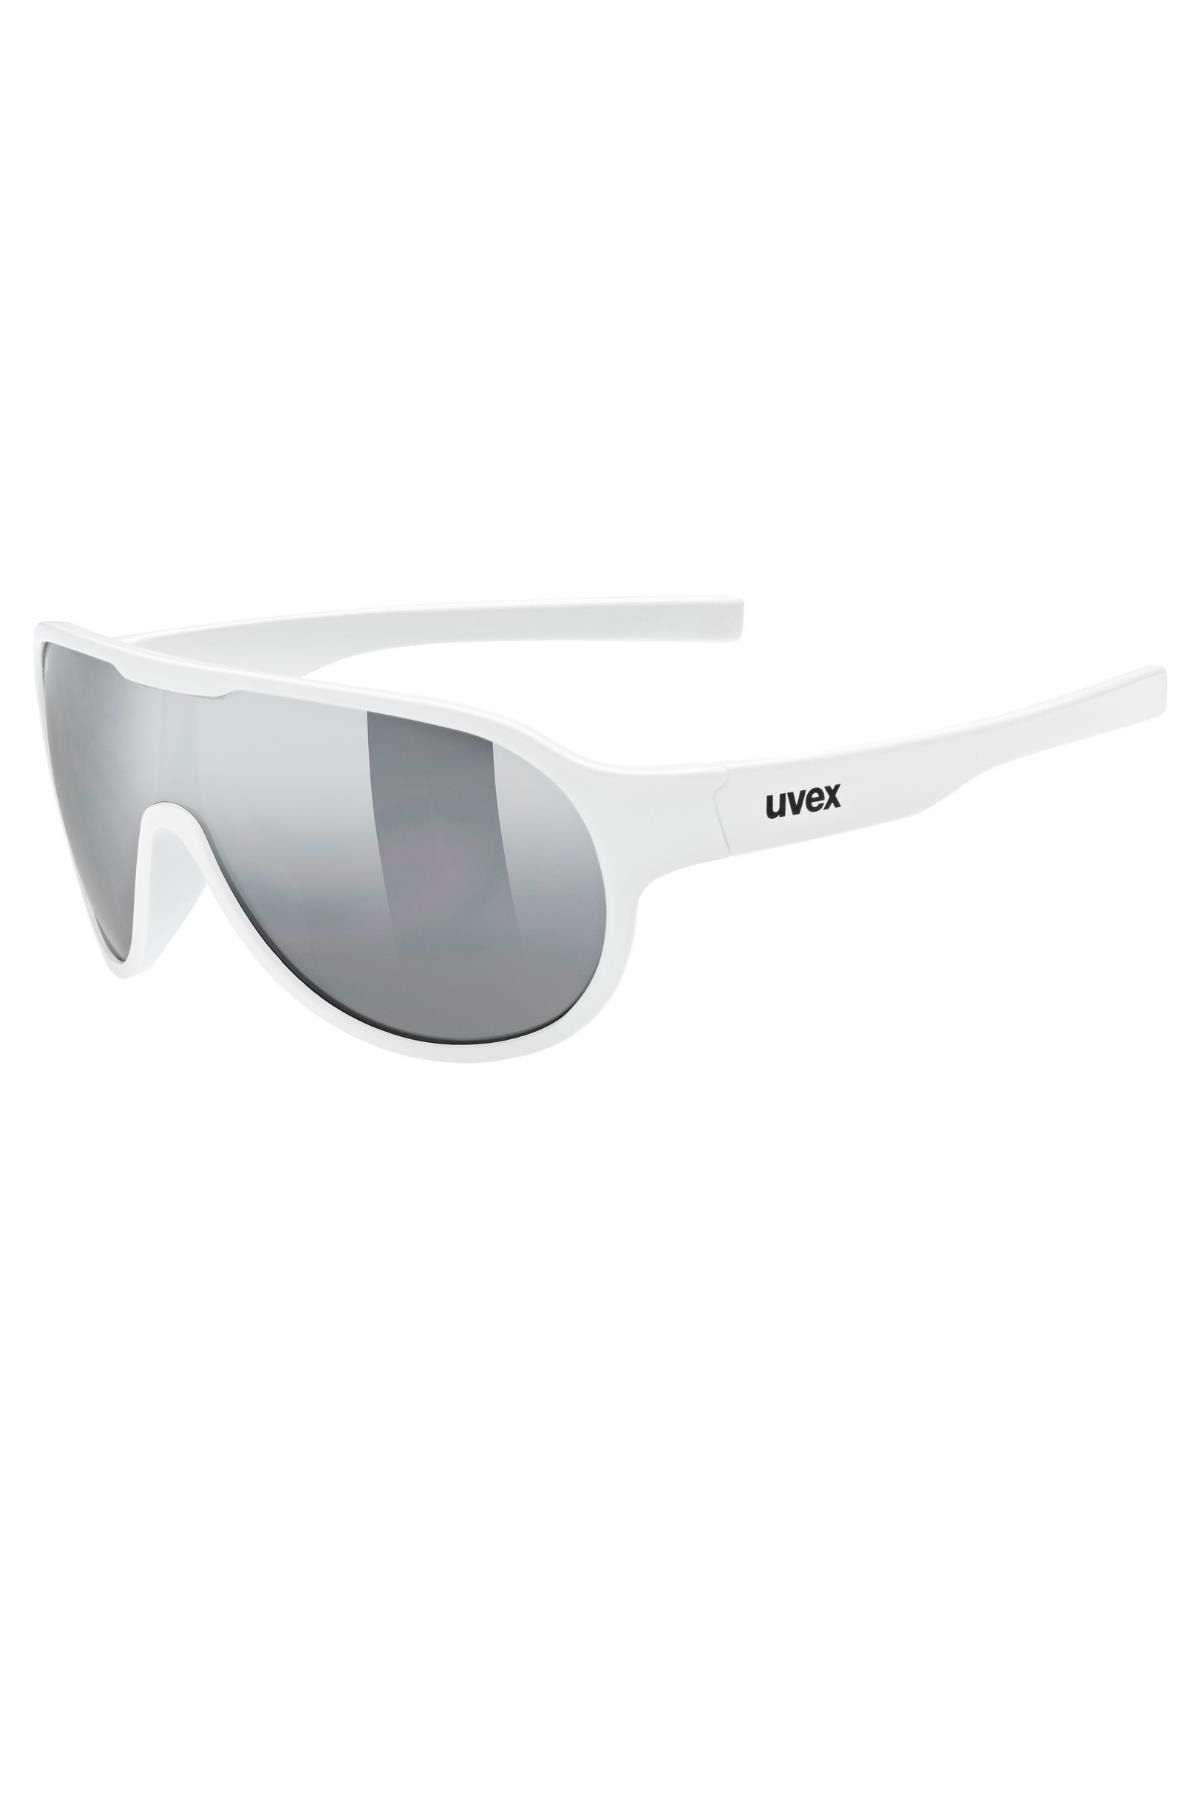 Uvex Sportstyle 512 White/ltm.silver Güneş Gözlüğü